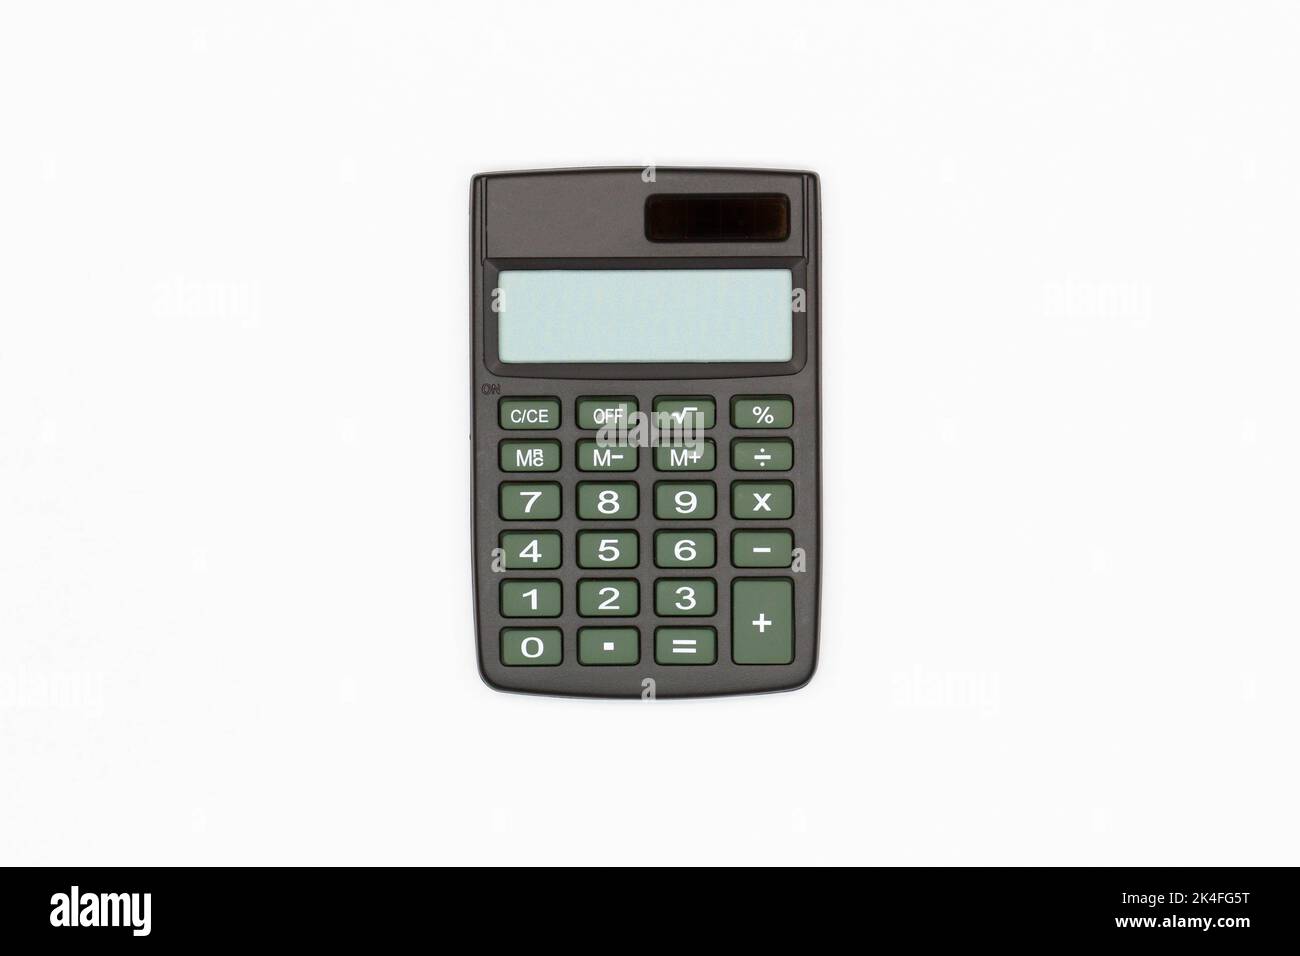 Calculatrice avec boutons marron et écran numérique vide sur fond blanc. Isolé. Calculatrice financière solaire. Machine électronique pour tapis Banque D'Images